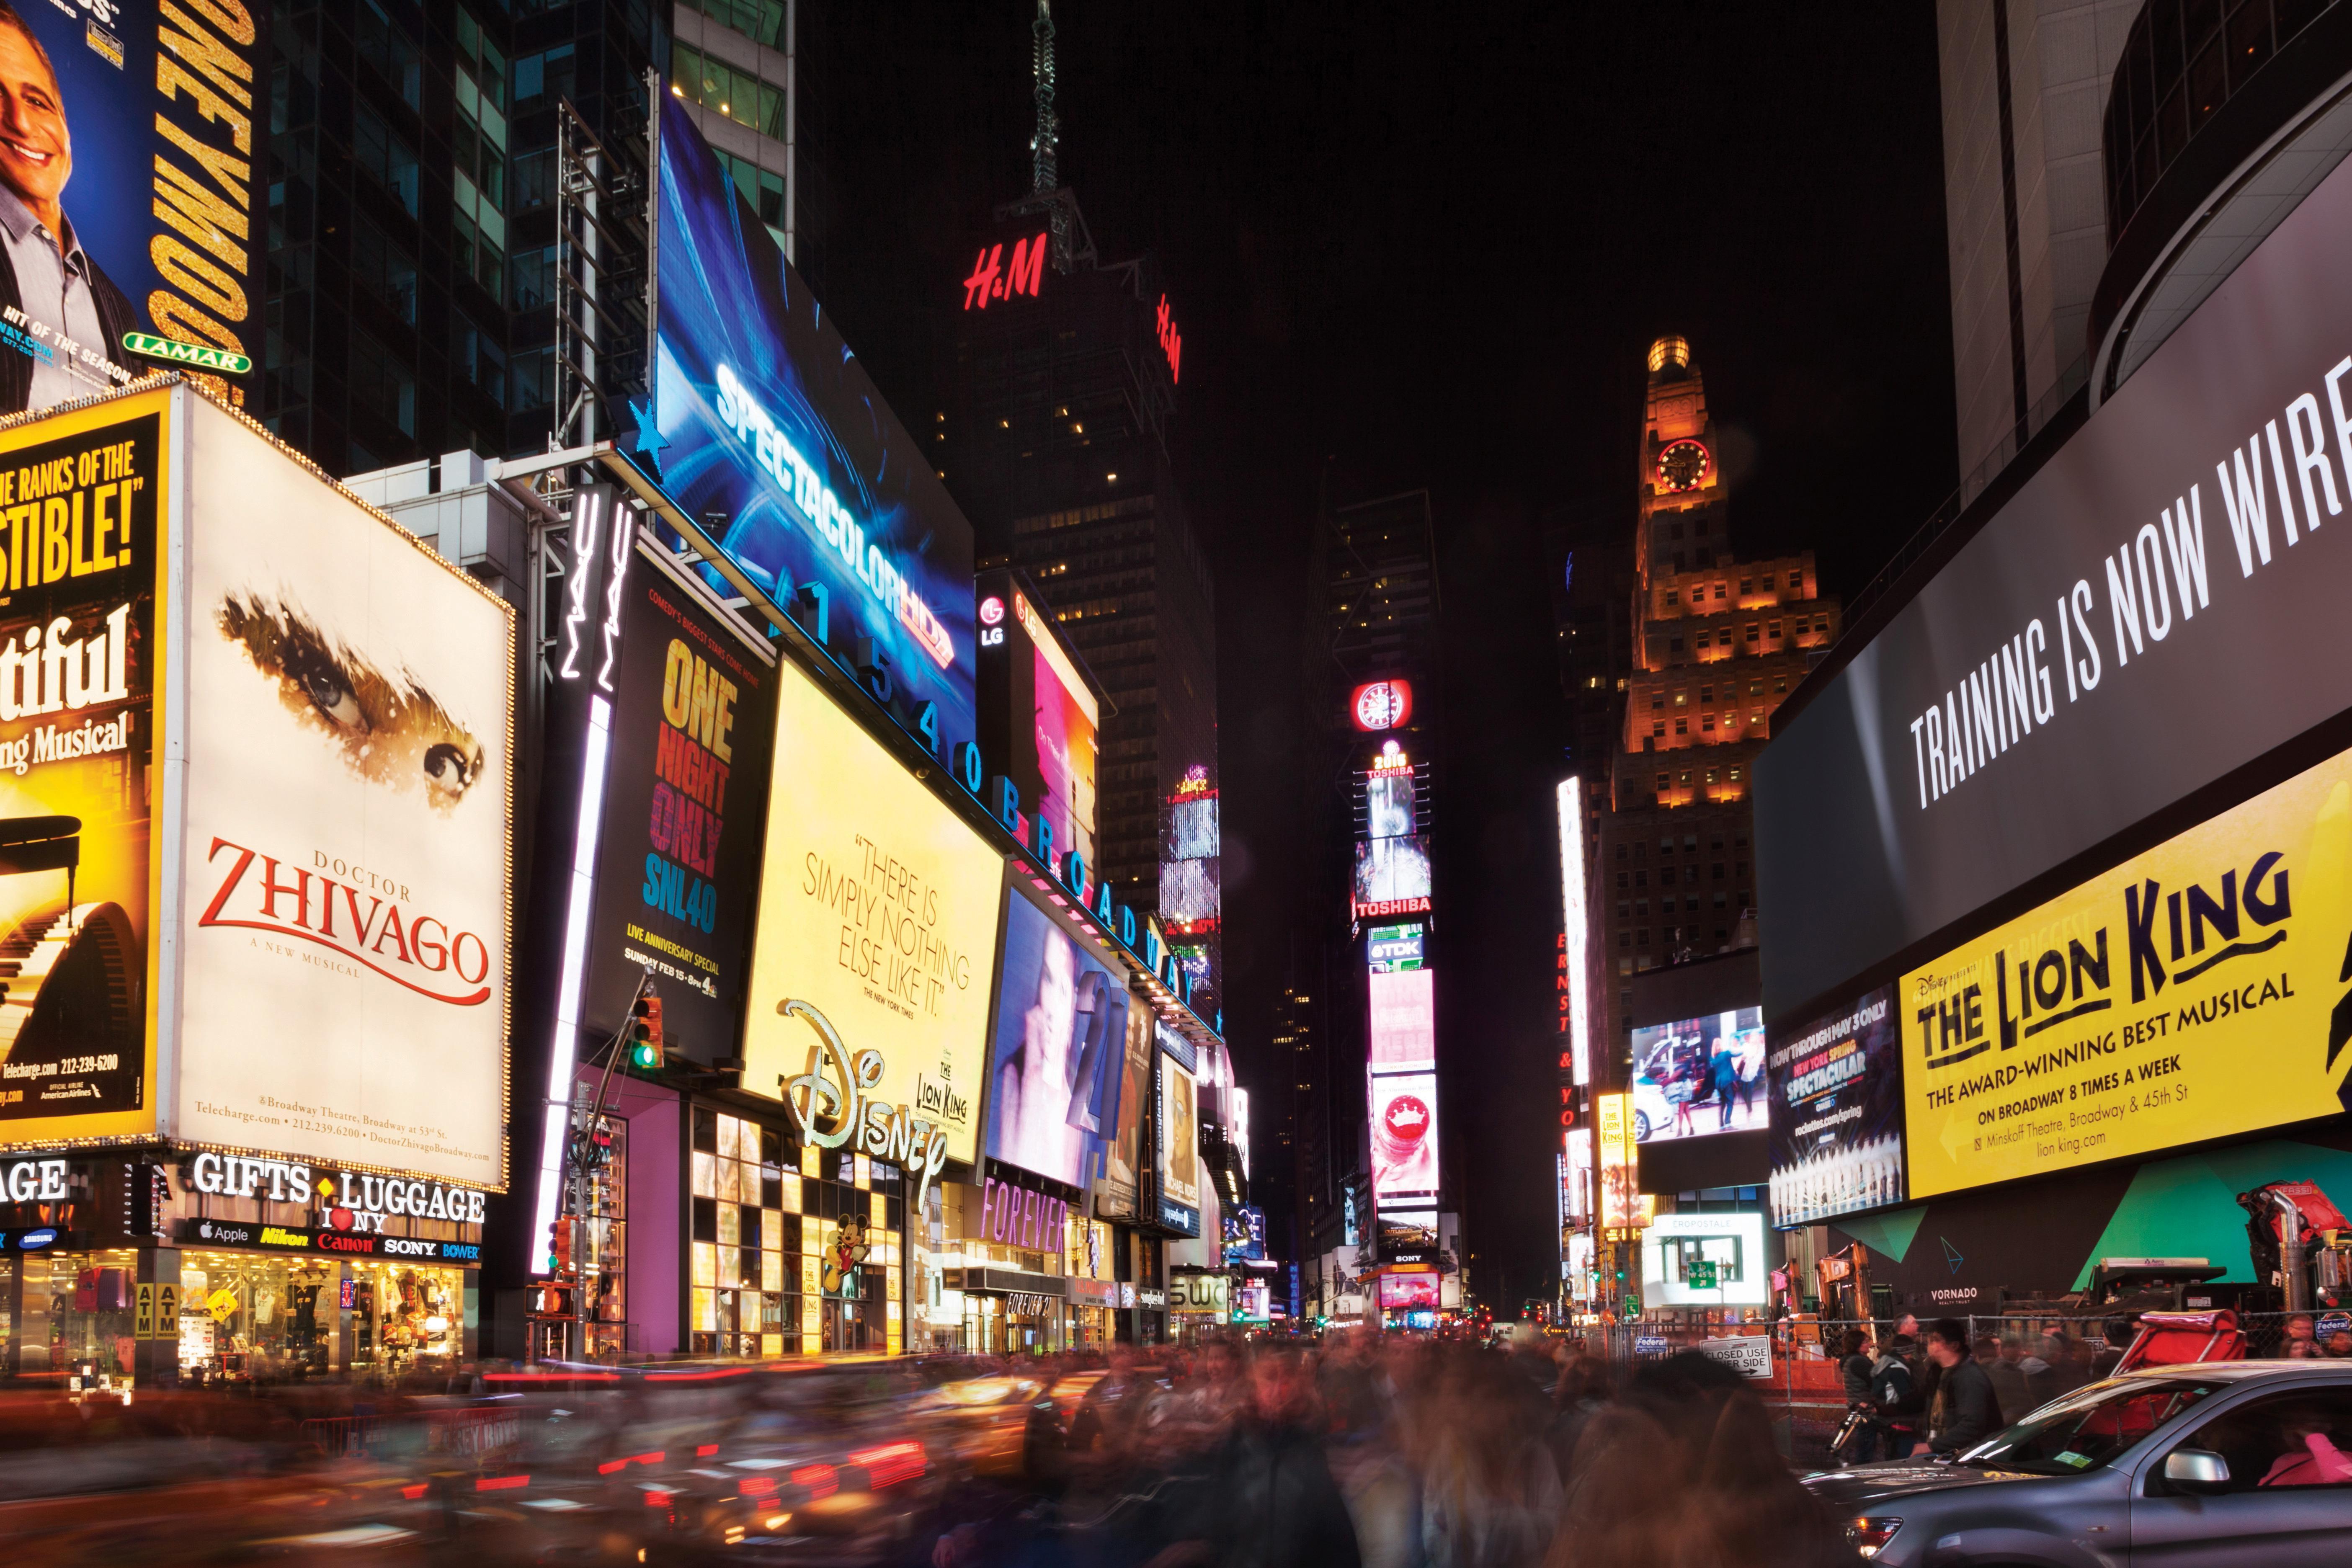 The Gallivant Times Square New York Extérieur photo